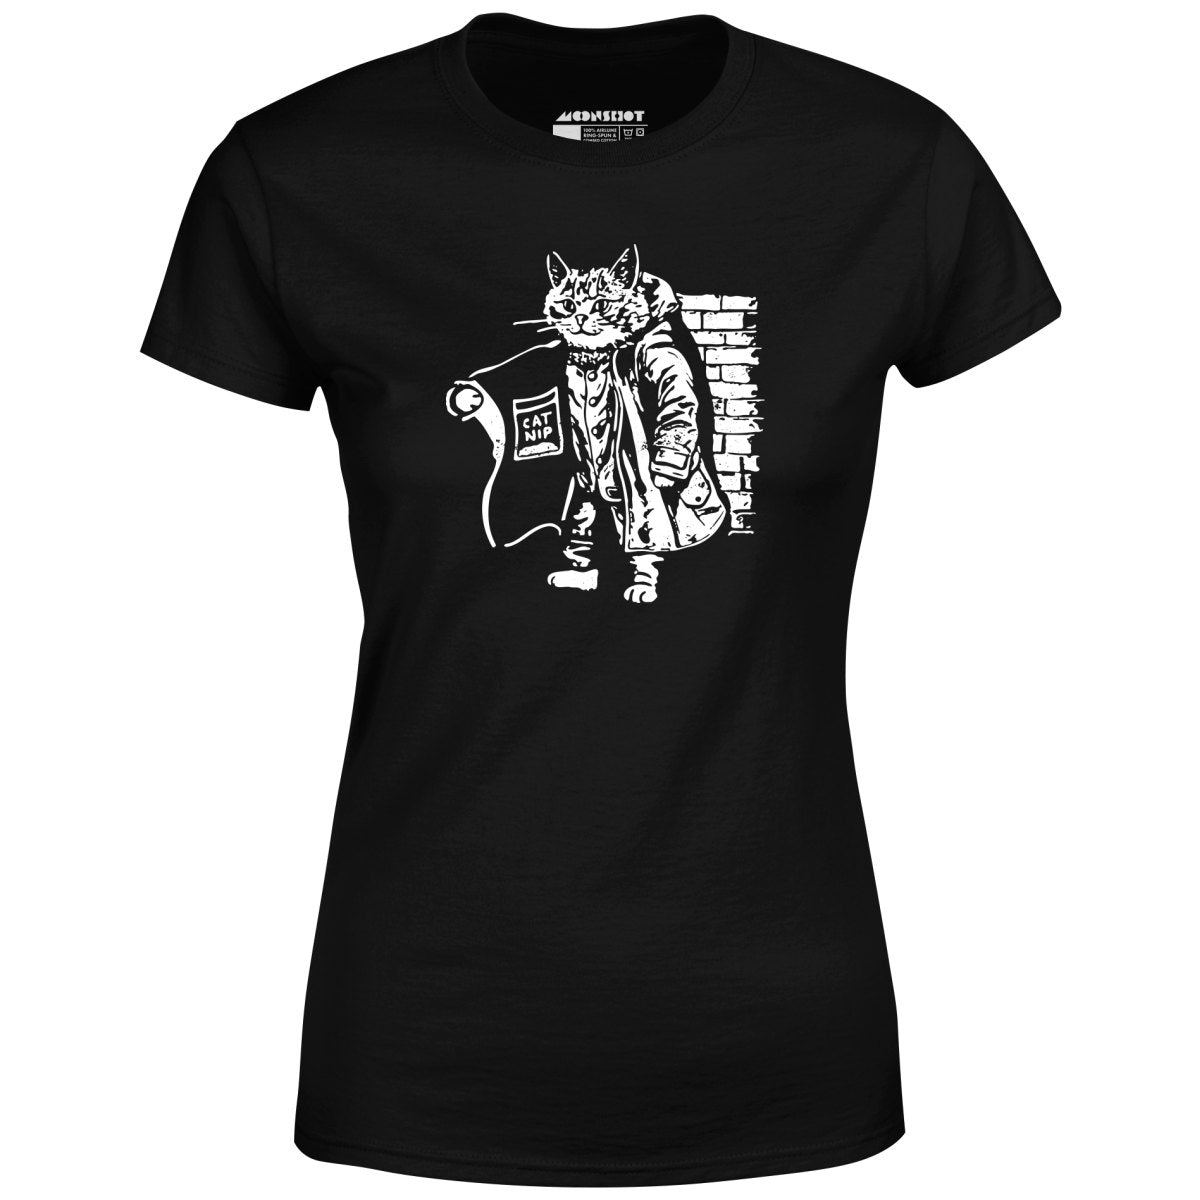 Catnip Dealer - Women's T-Shirt